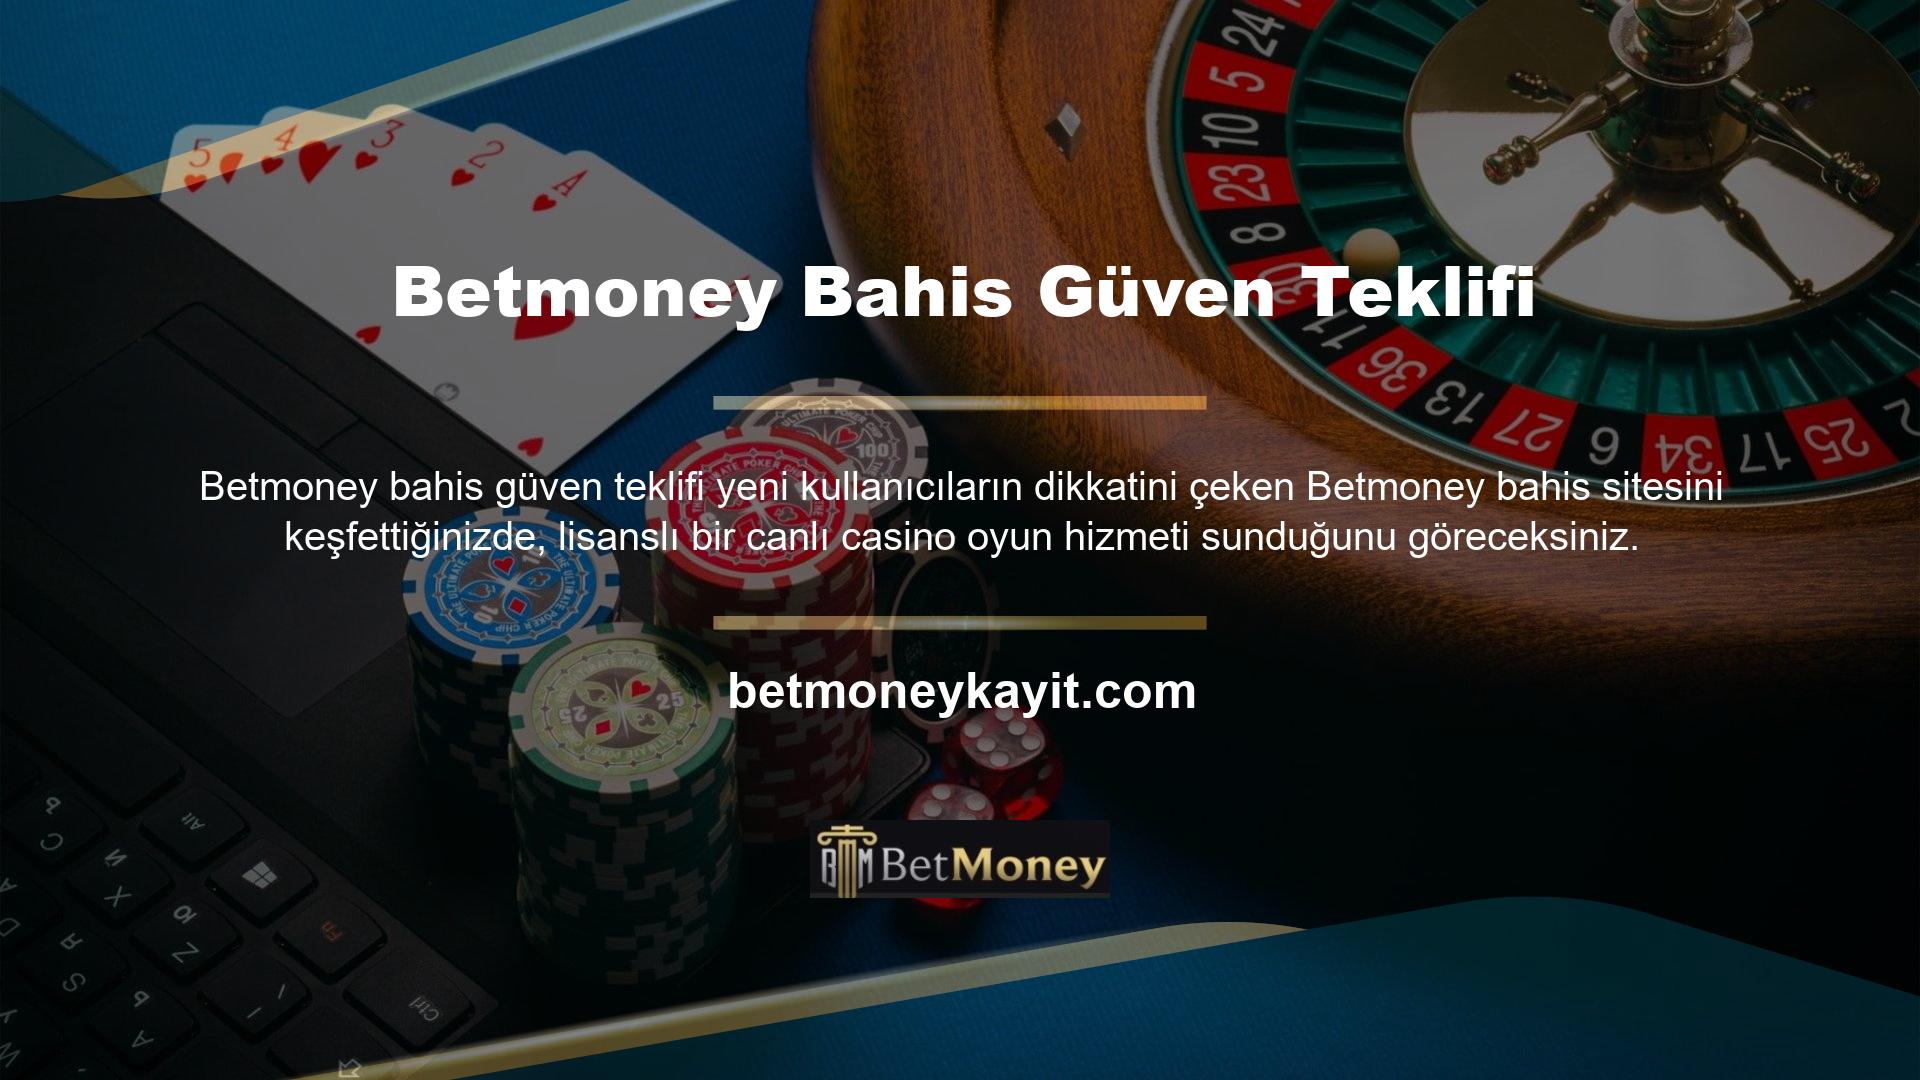 Üstelik Betmoney, casino pazarındaki birçok casino bahis firmasının aksine en güvenilir ve kaliteli firmalarla çalışmaktadır